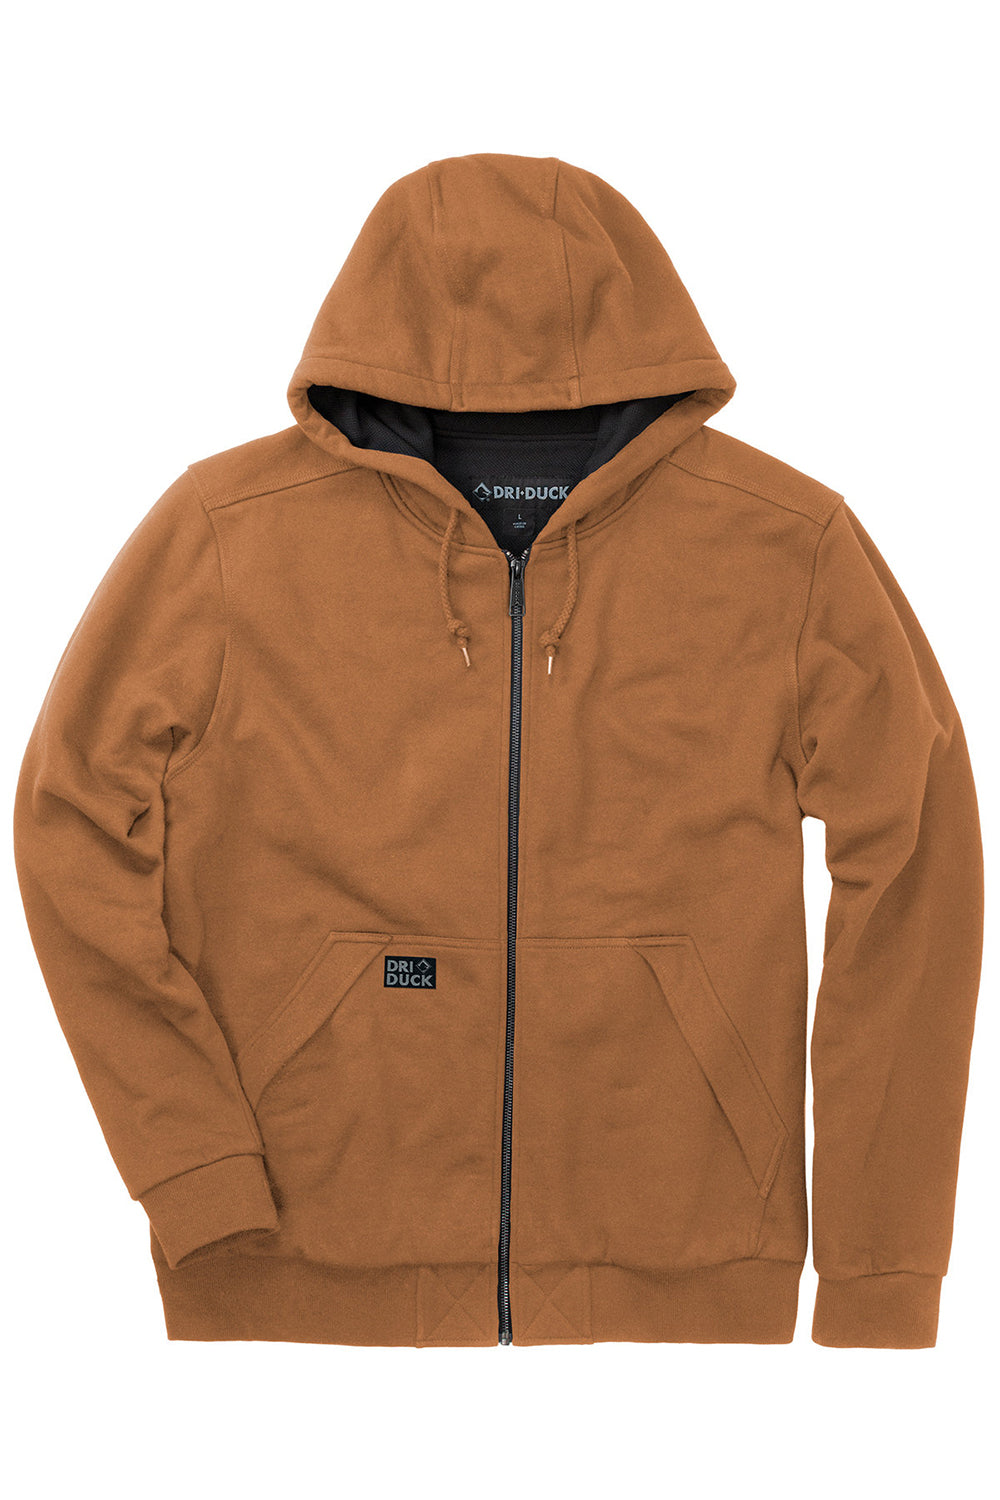 Men's Hoody Jacket Hoodie Sweatshirts Waterproof Insulated Hooded